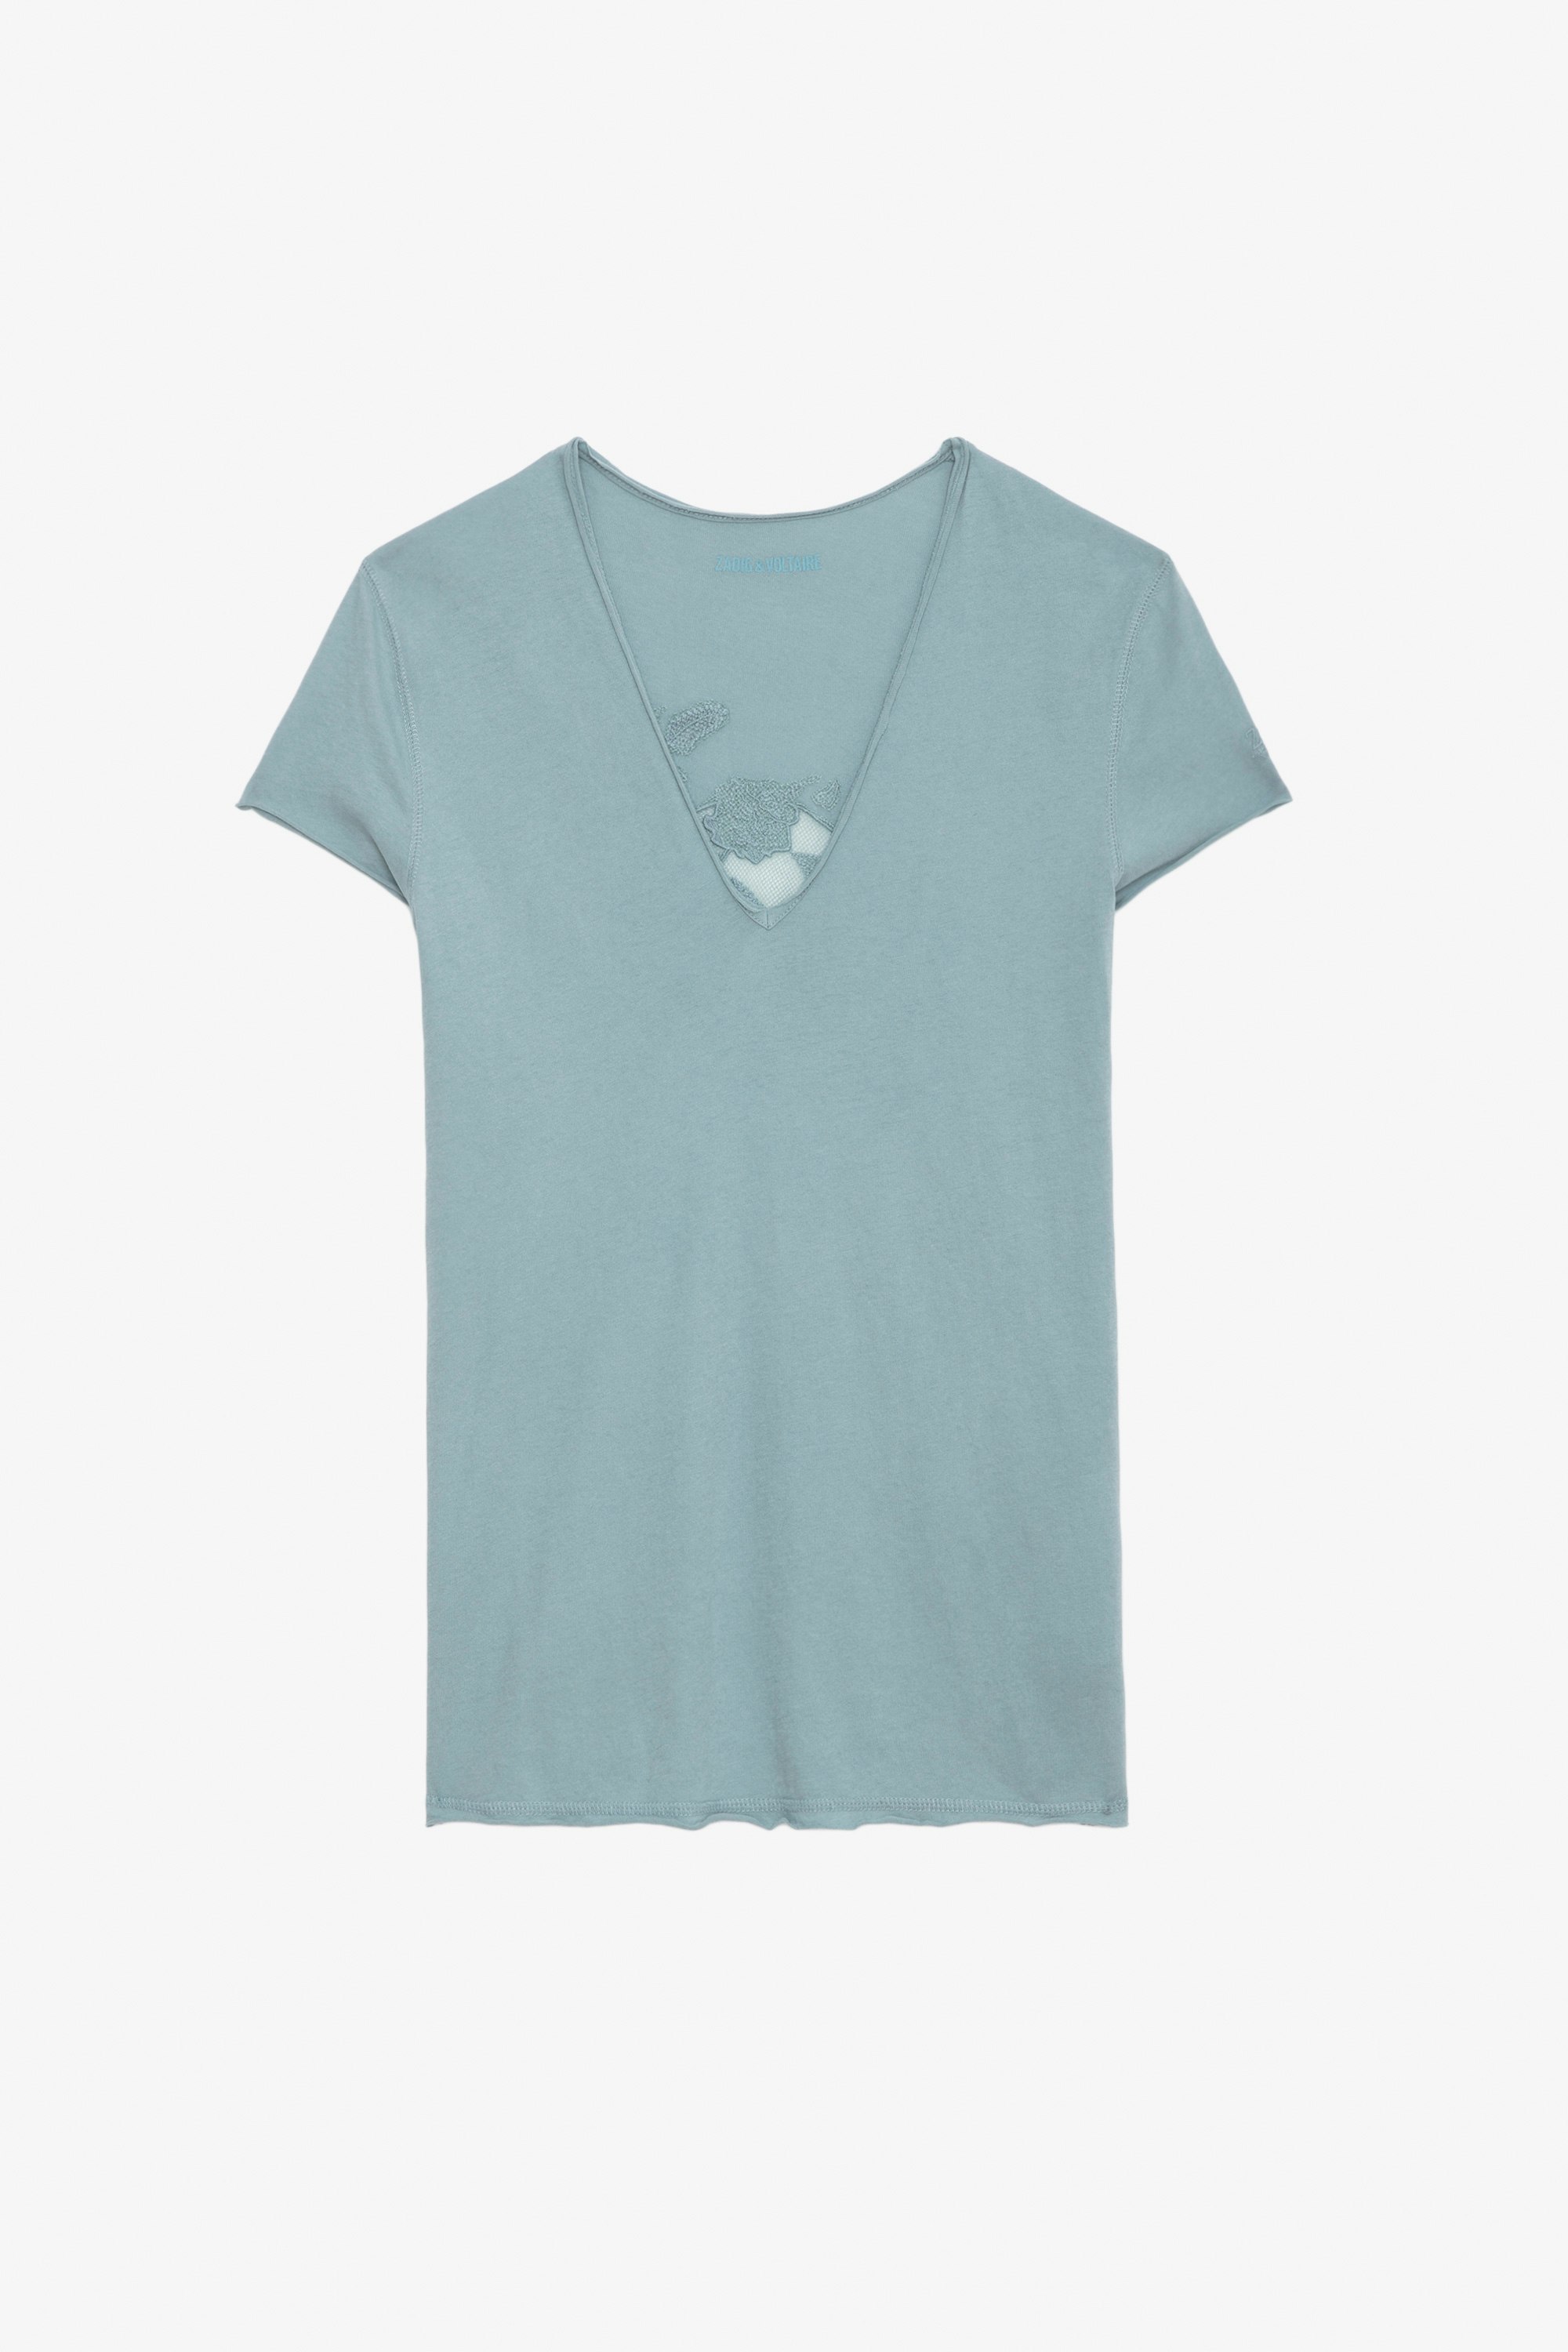 Camiseta Story Fishnet - Camiseta de algodón ecológico en color azul claro con mangas cortas y bordado de calavera y flores en la espalda.